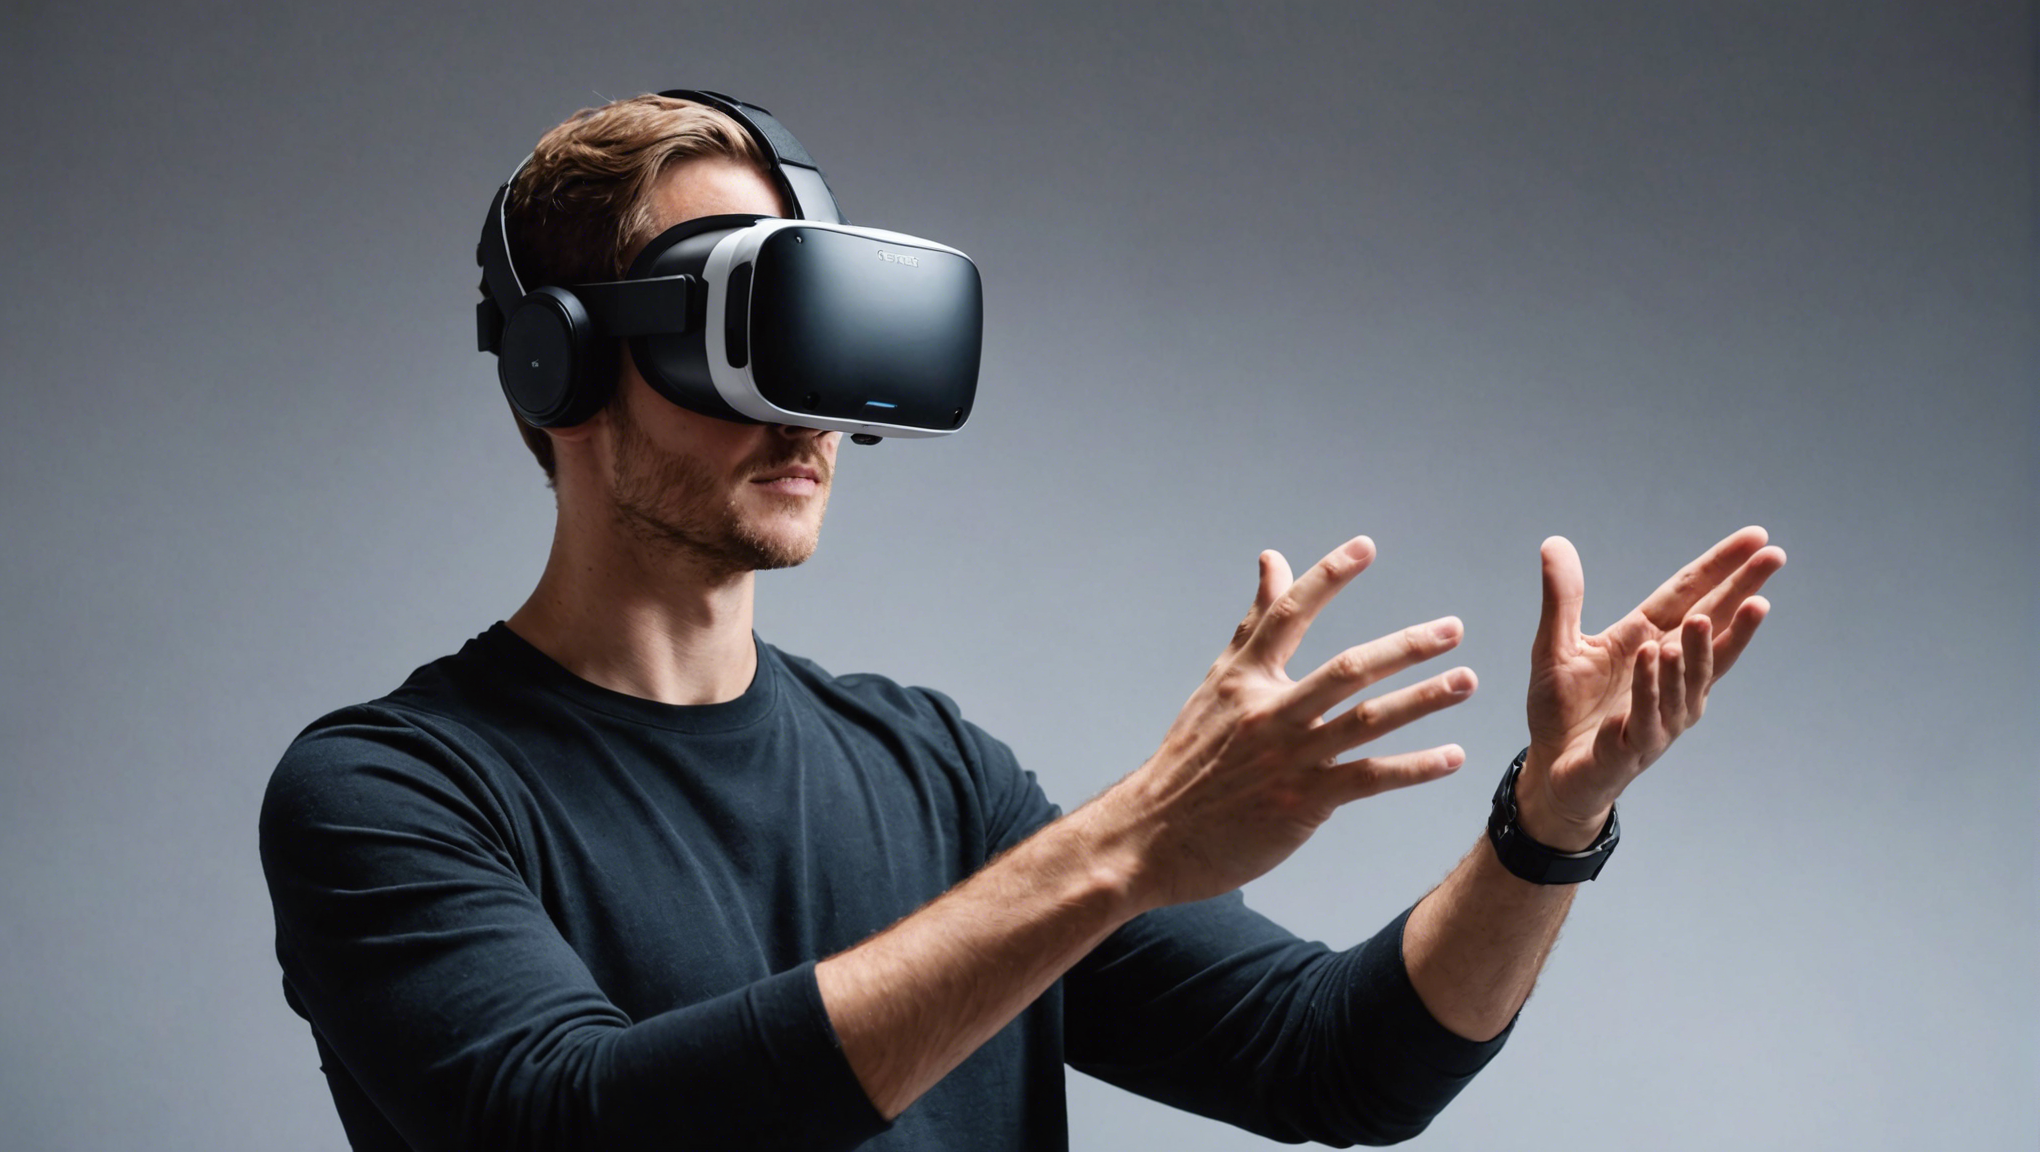 découvrez en détail ce qu'est la réalité virtuelle et apprenez à la définir avec précision dans cet article informatif.